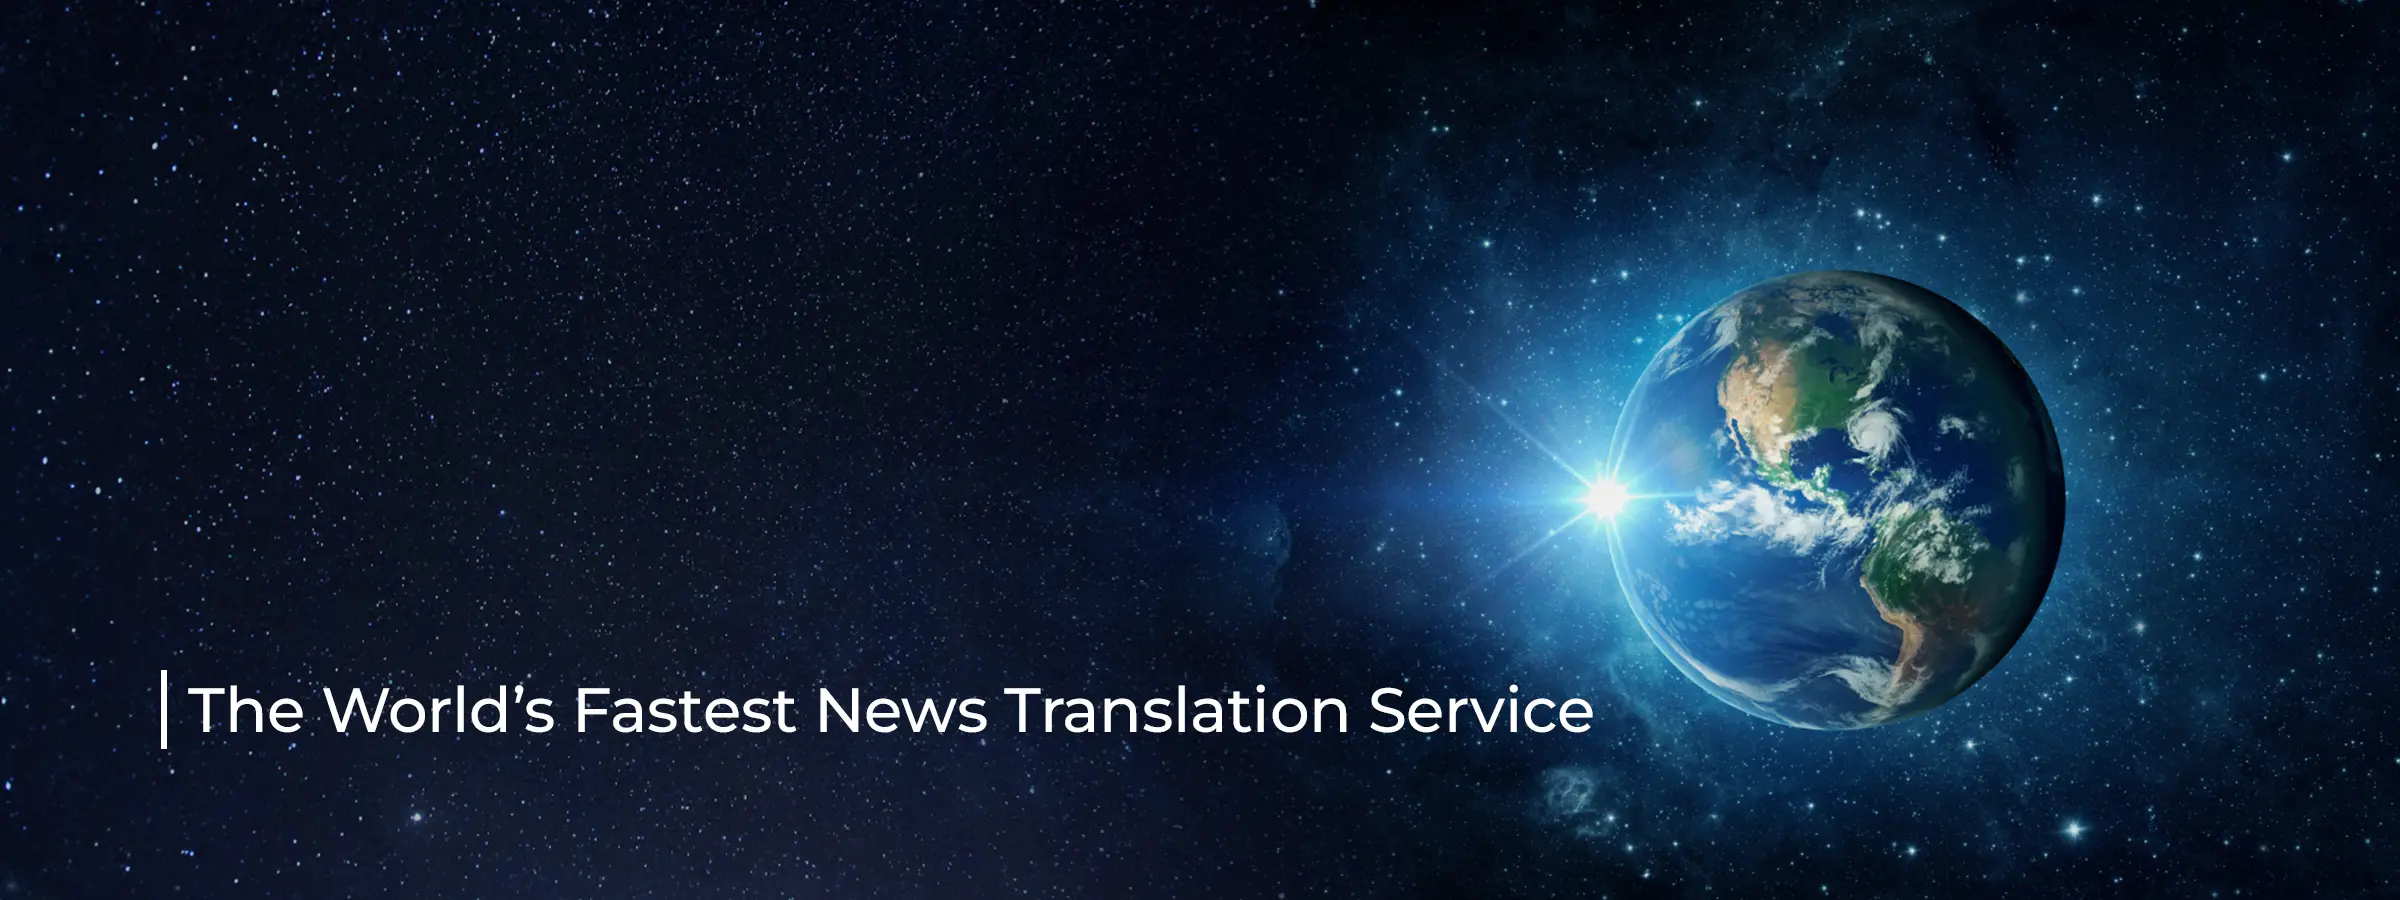 fastest-news-translation-service-banner